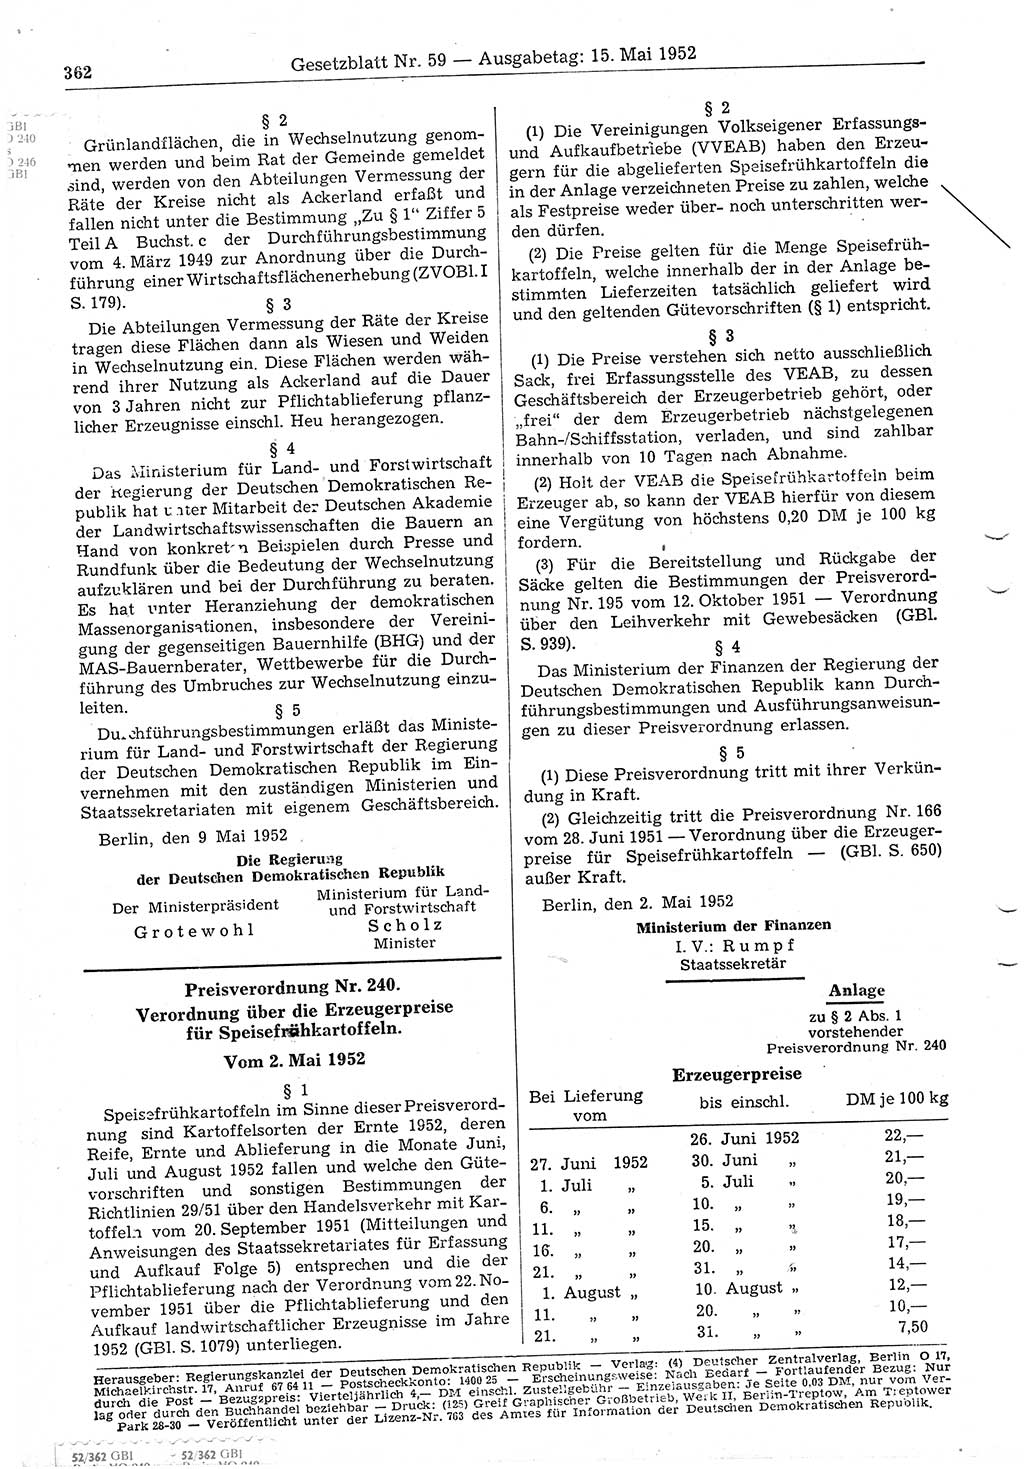 Gesetzblatt (GBl.) der Deutschen Demokratischen Republik (DDR) 1952, Seite 362 (GBl. DDR 1952, S. 362)